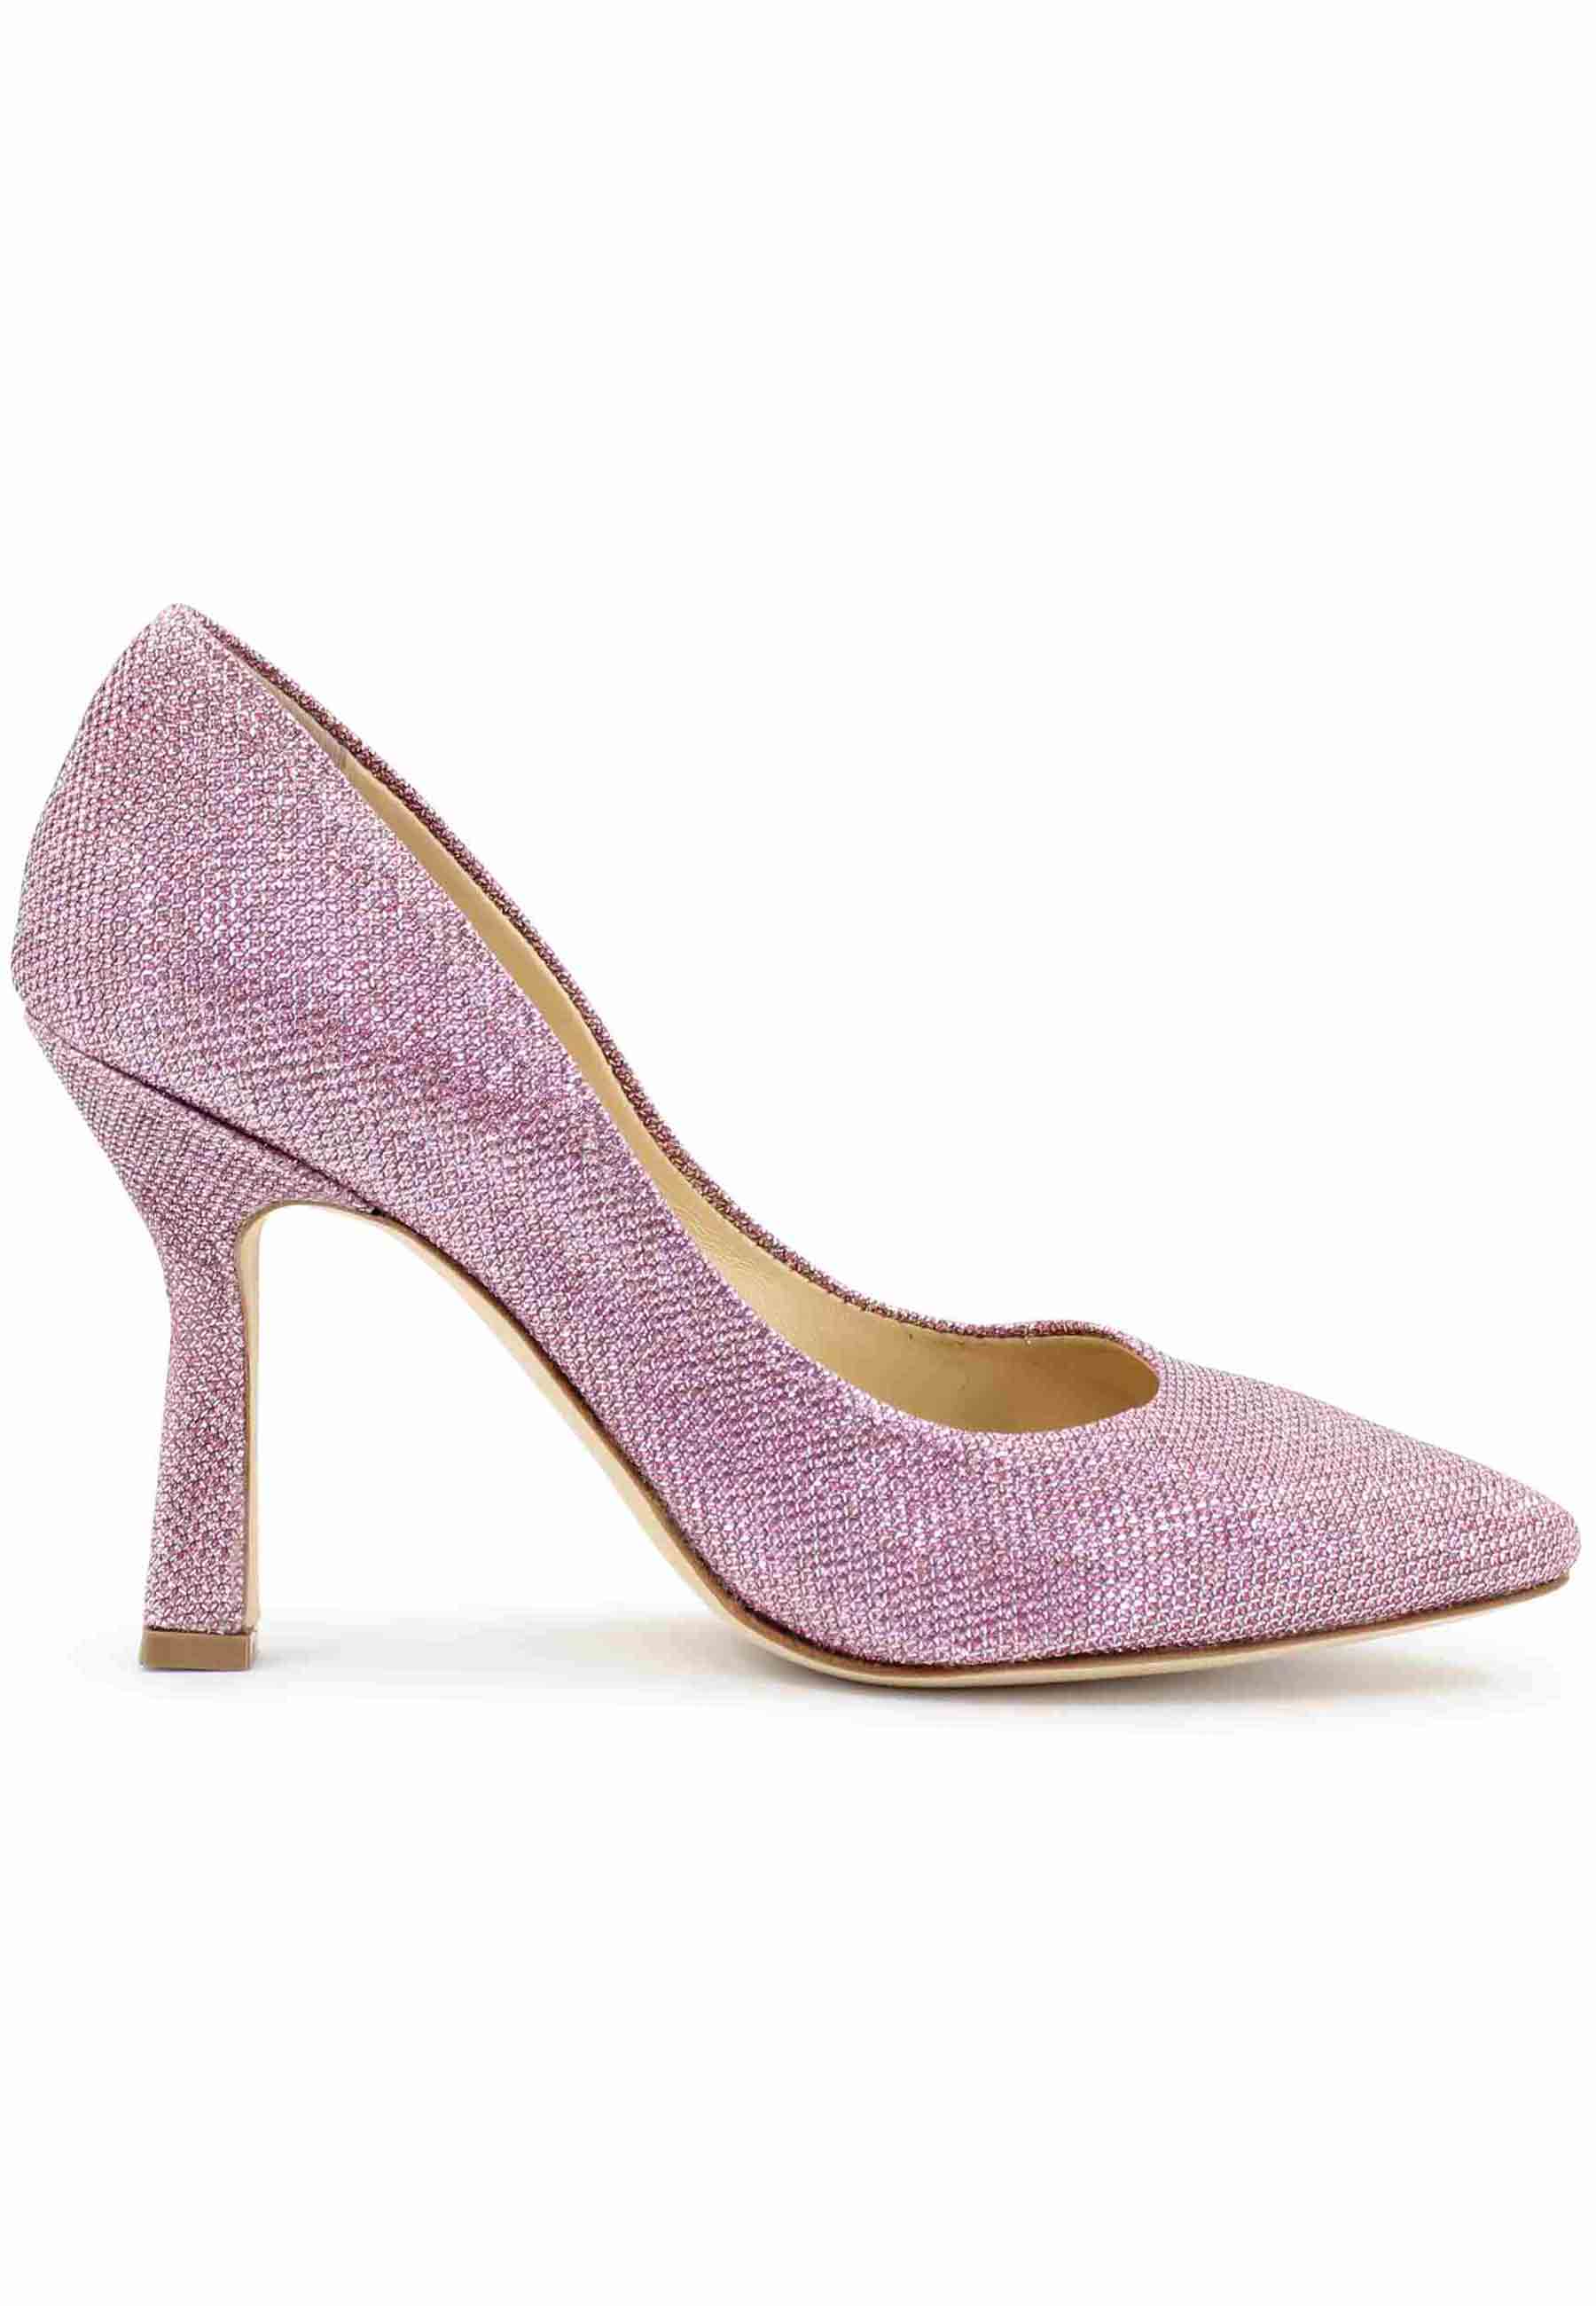 DE1002/RT women's pumps in pink lux fabric with high heel